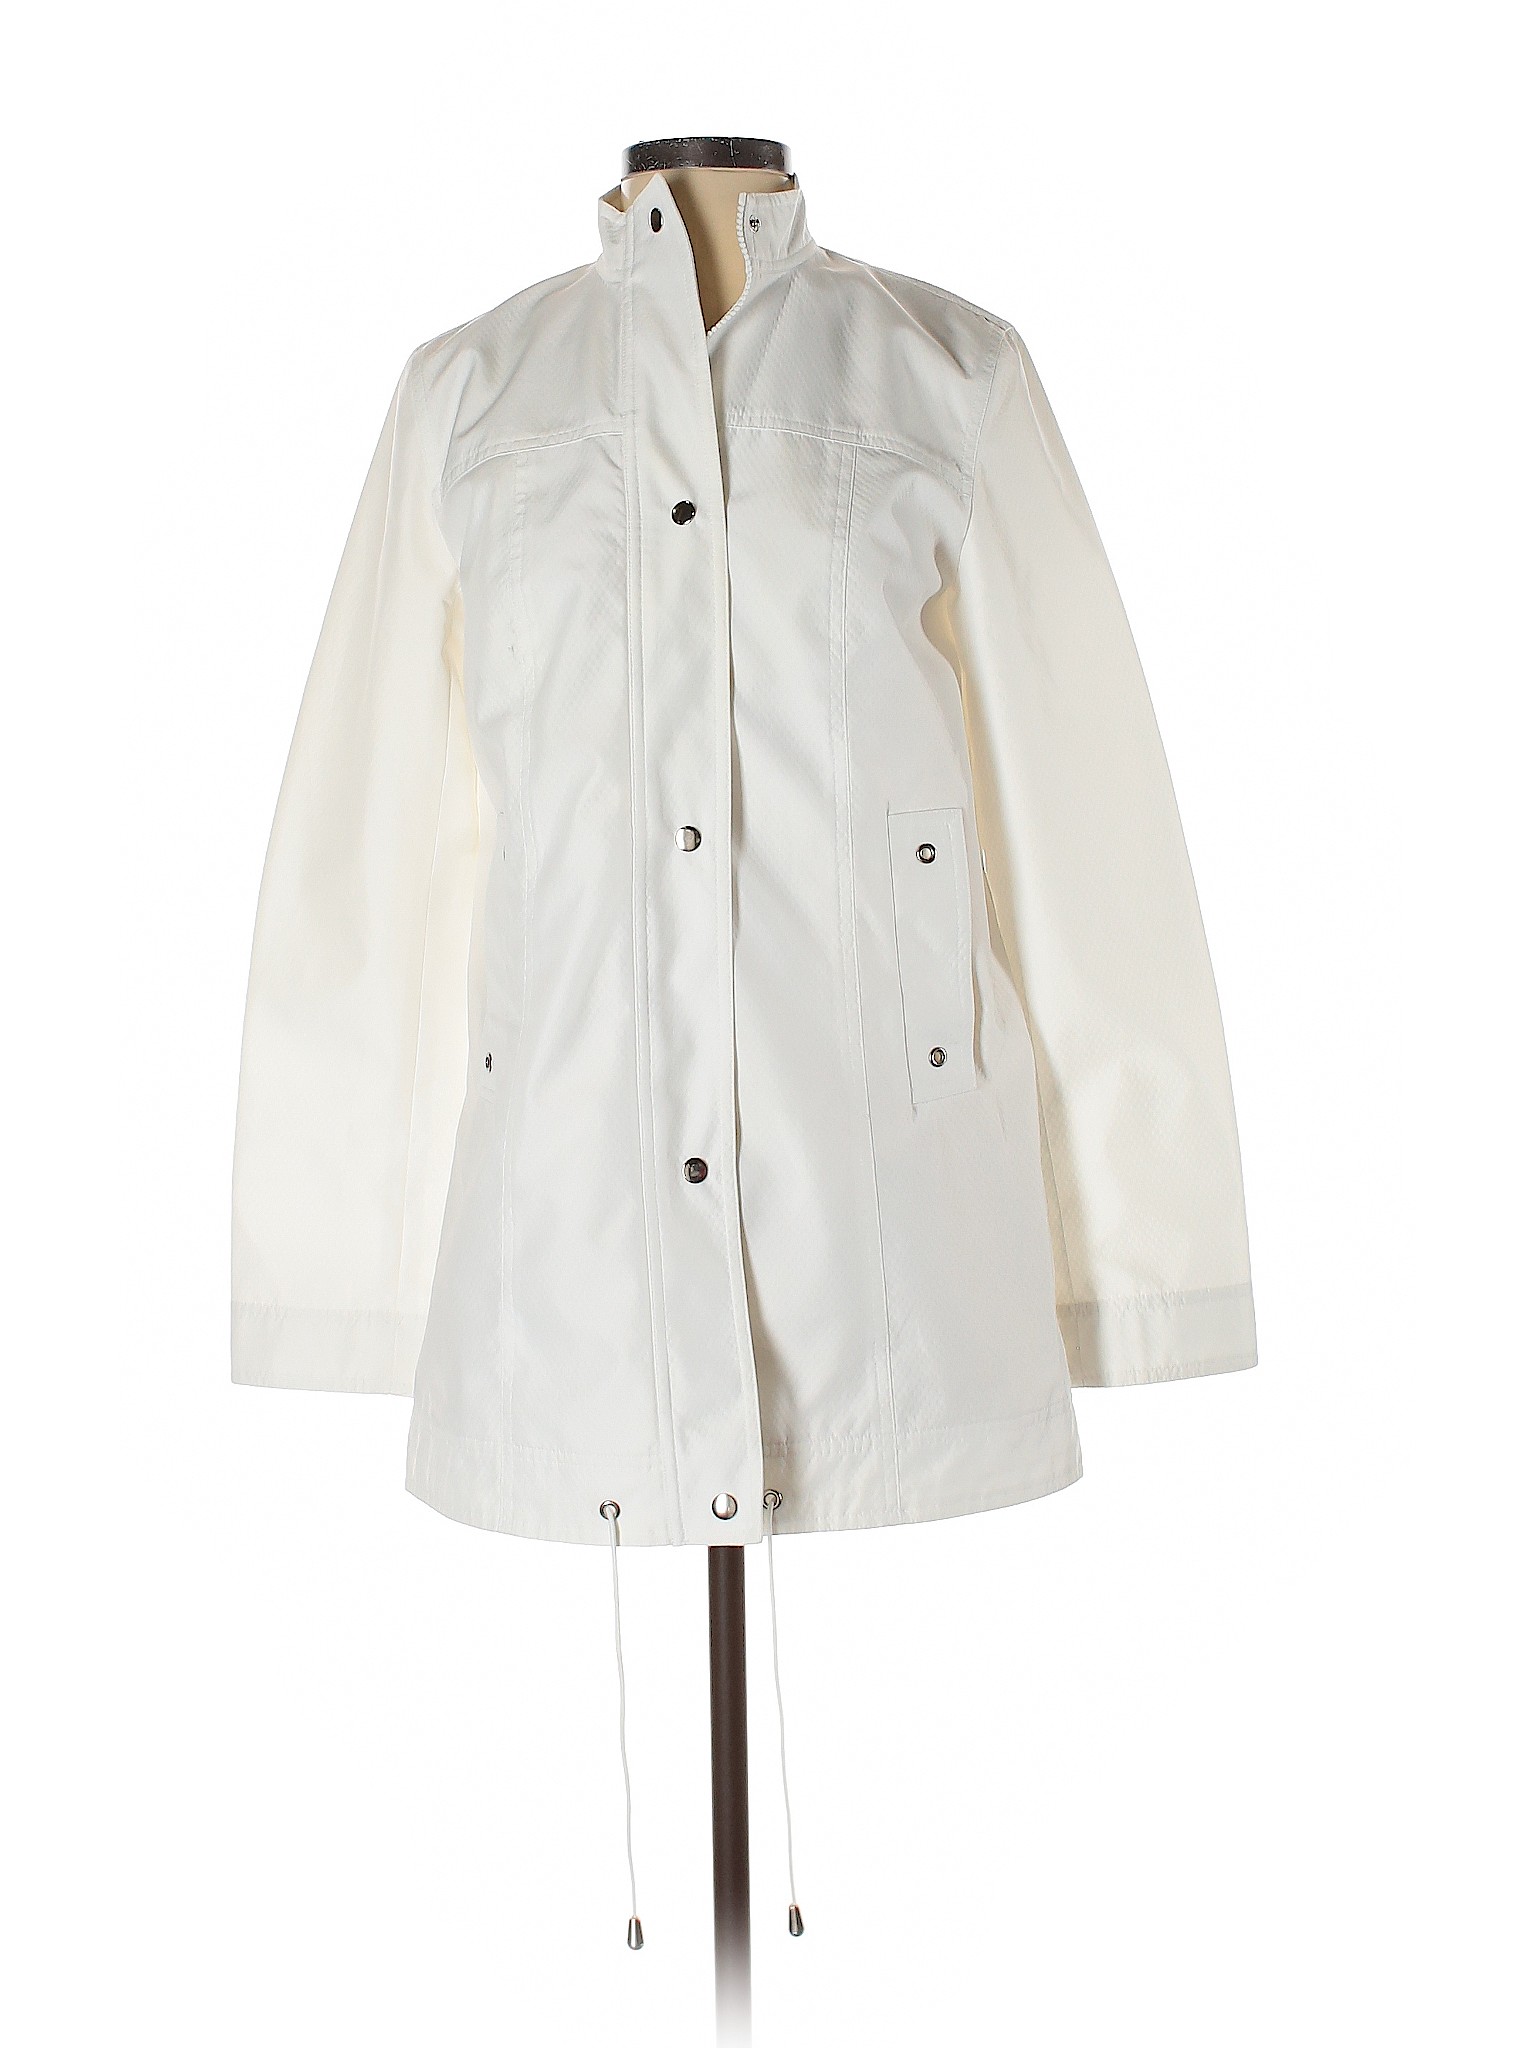 Ann Taylor LOFT Women White Jacket XS | eBay